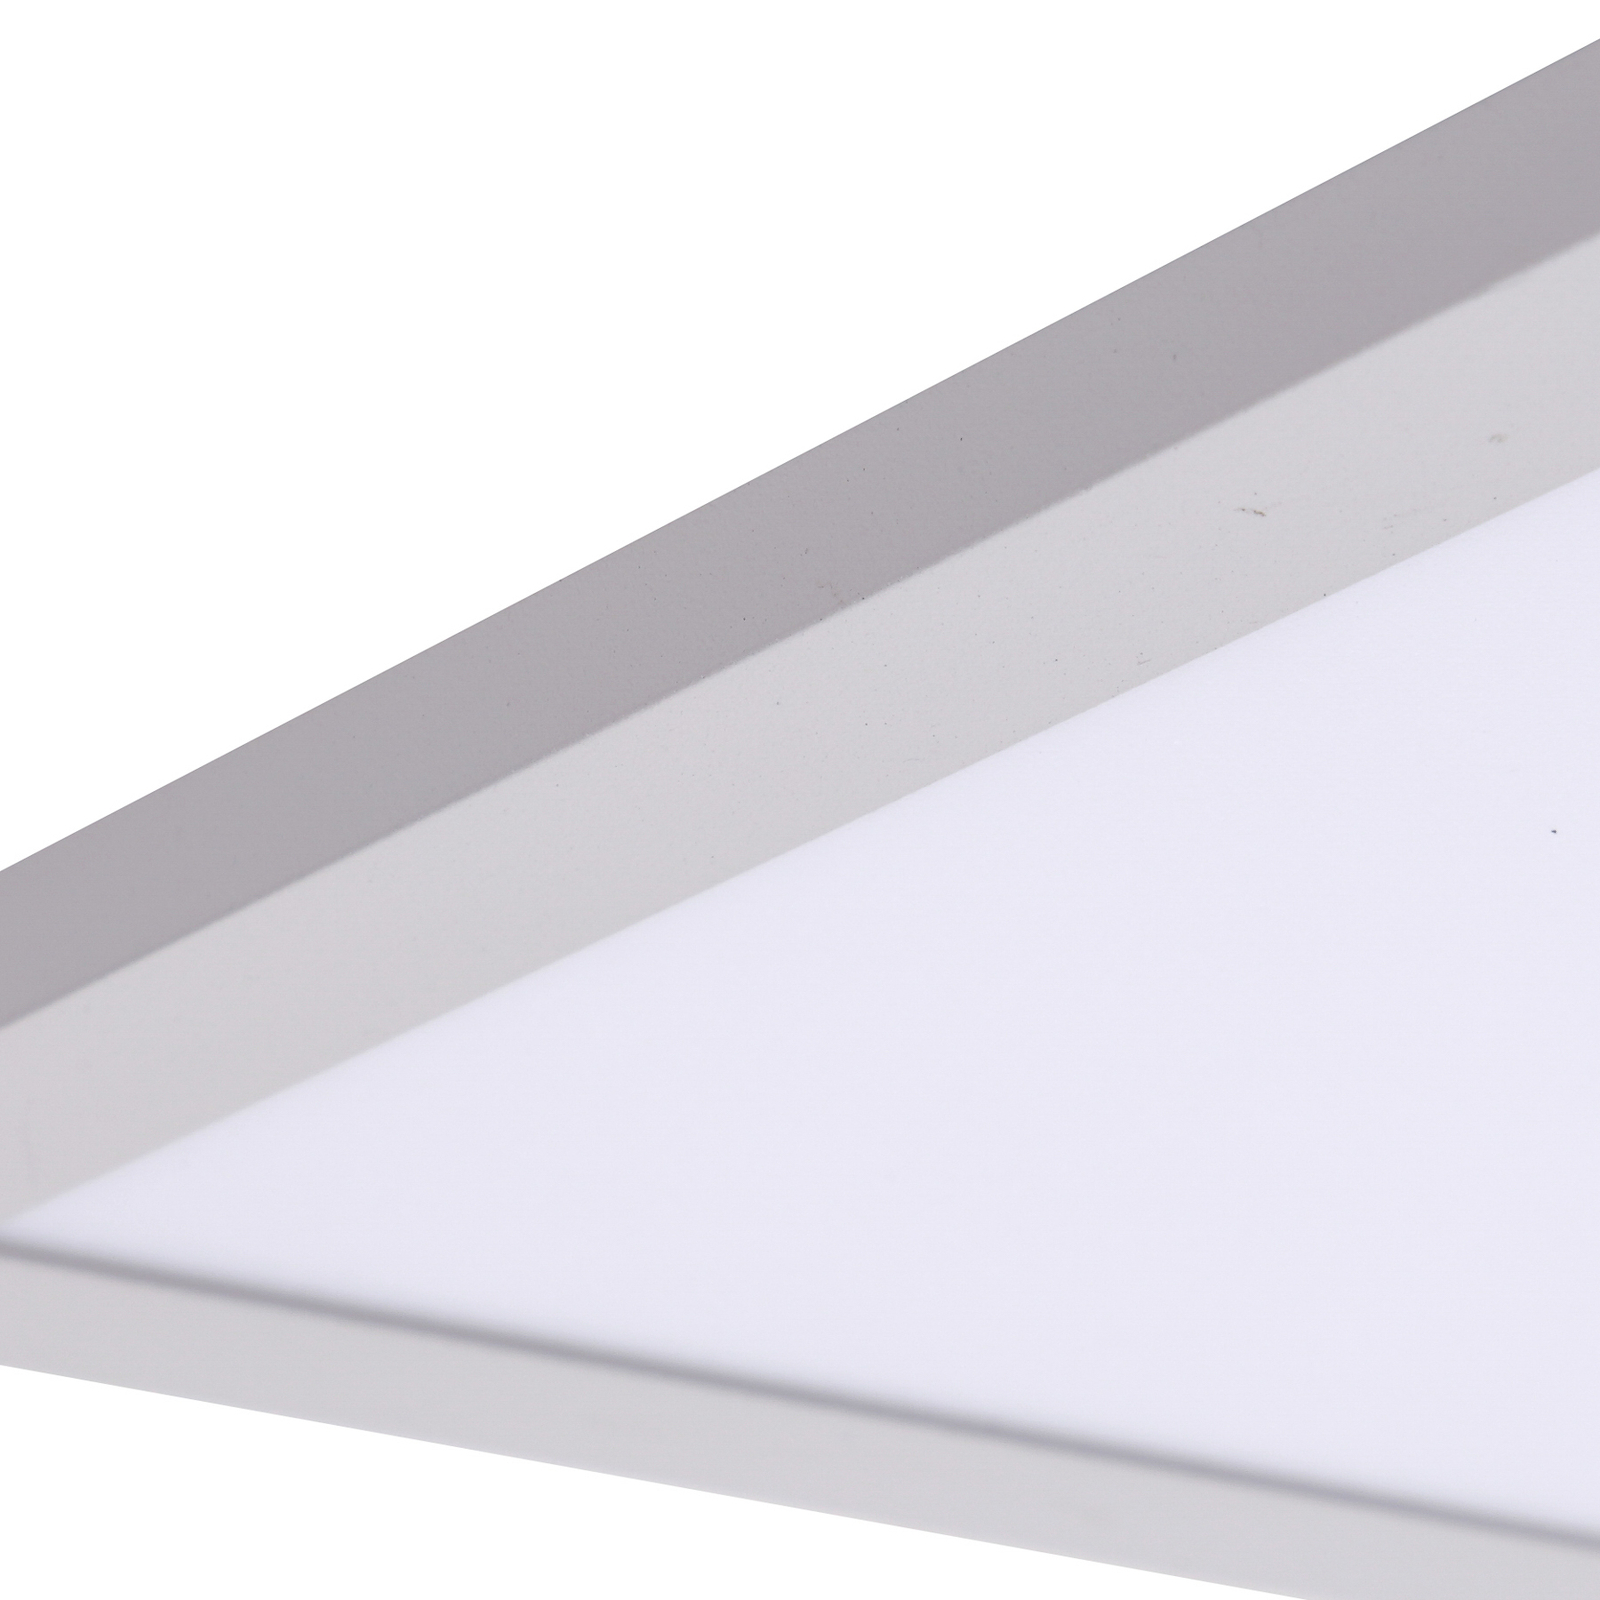 Panel LED Lindby Enhife, blanco, 29,5 x 29,5 cm, aluminio